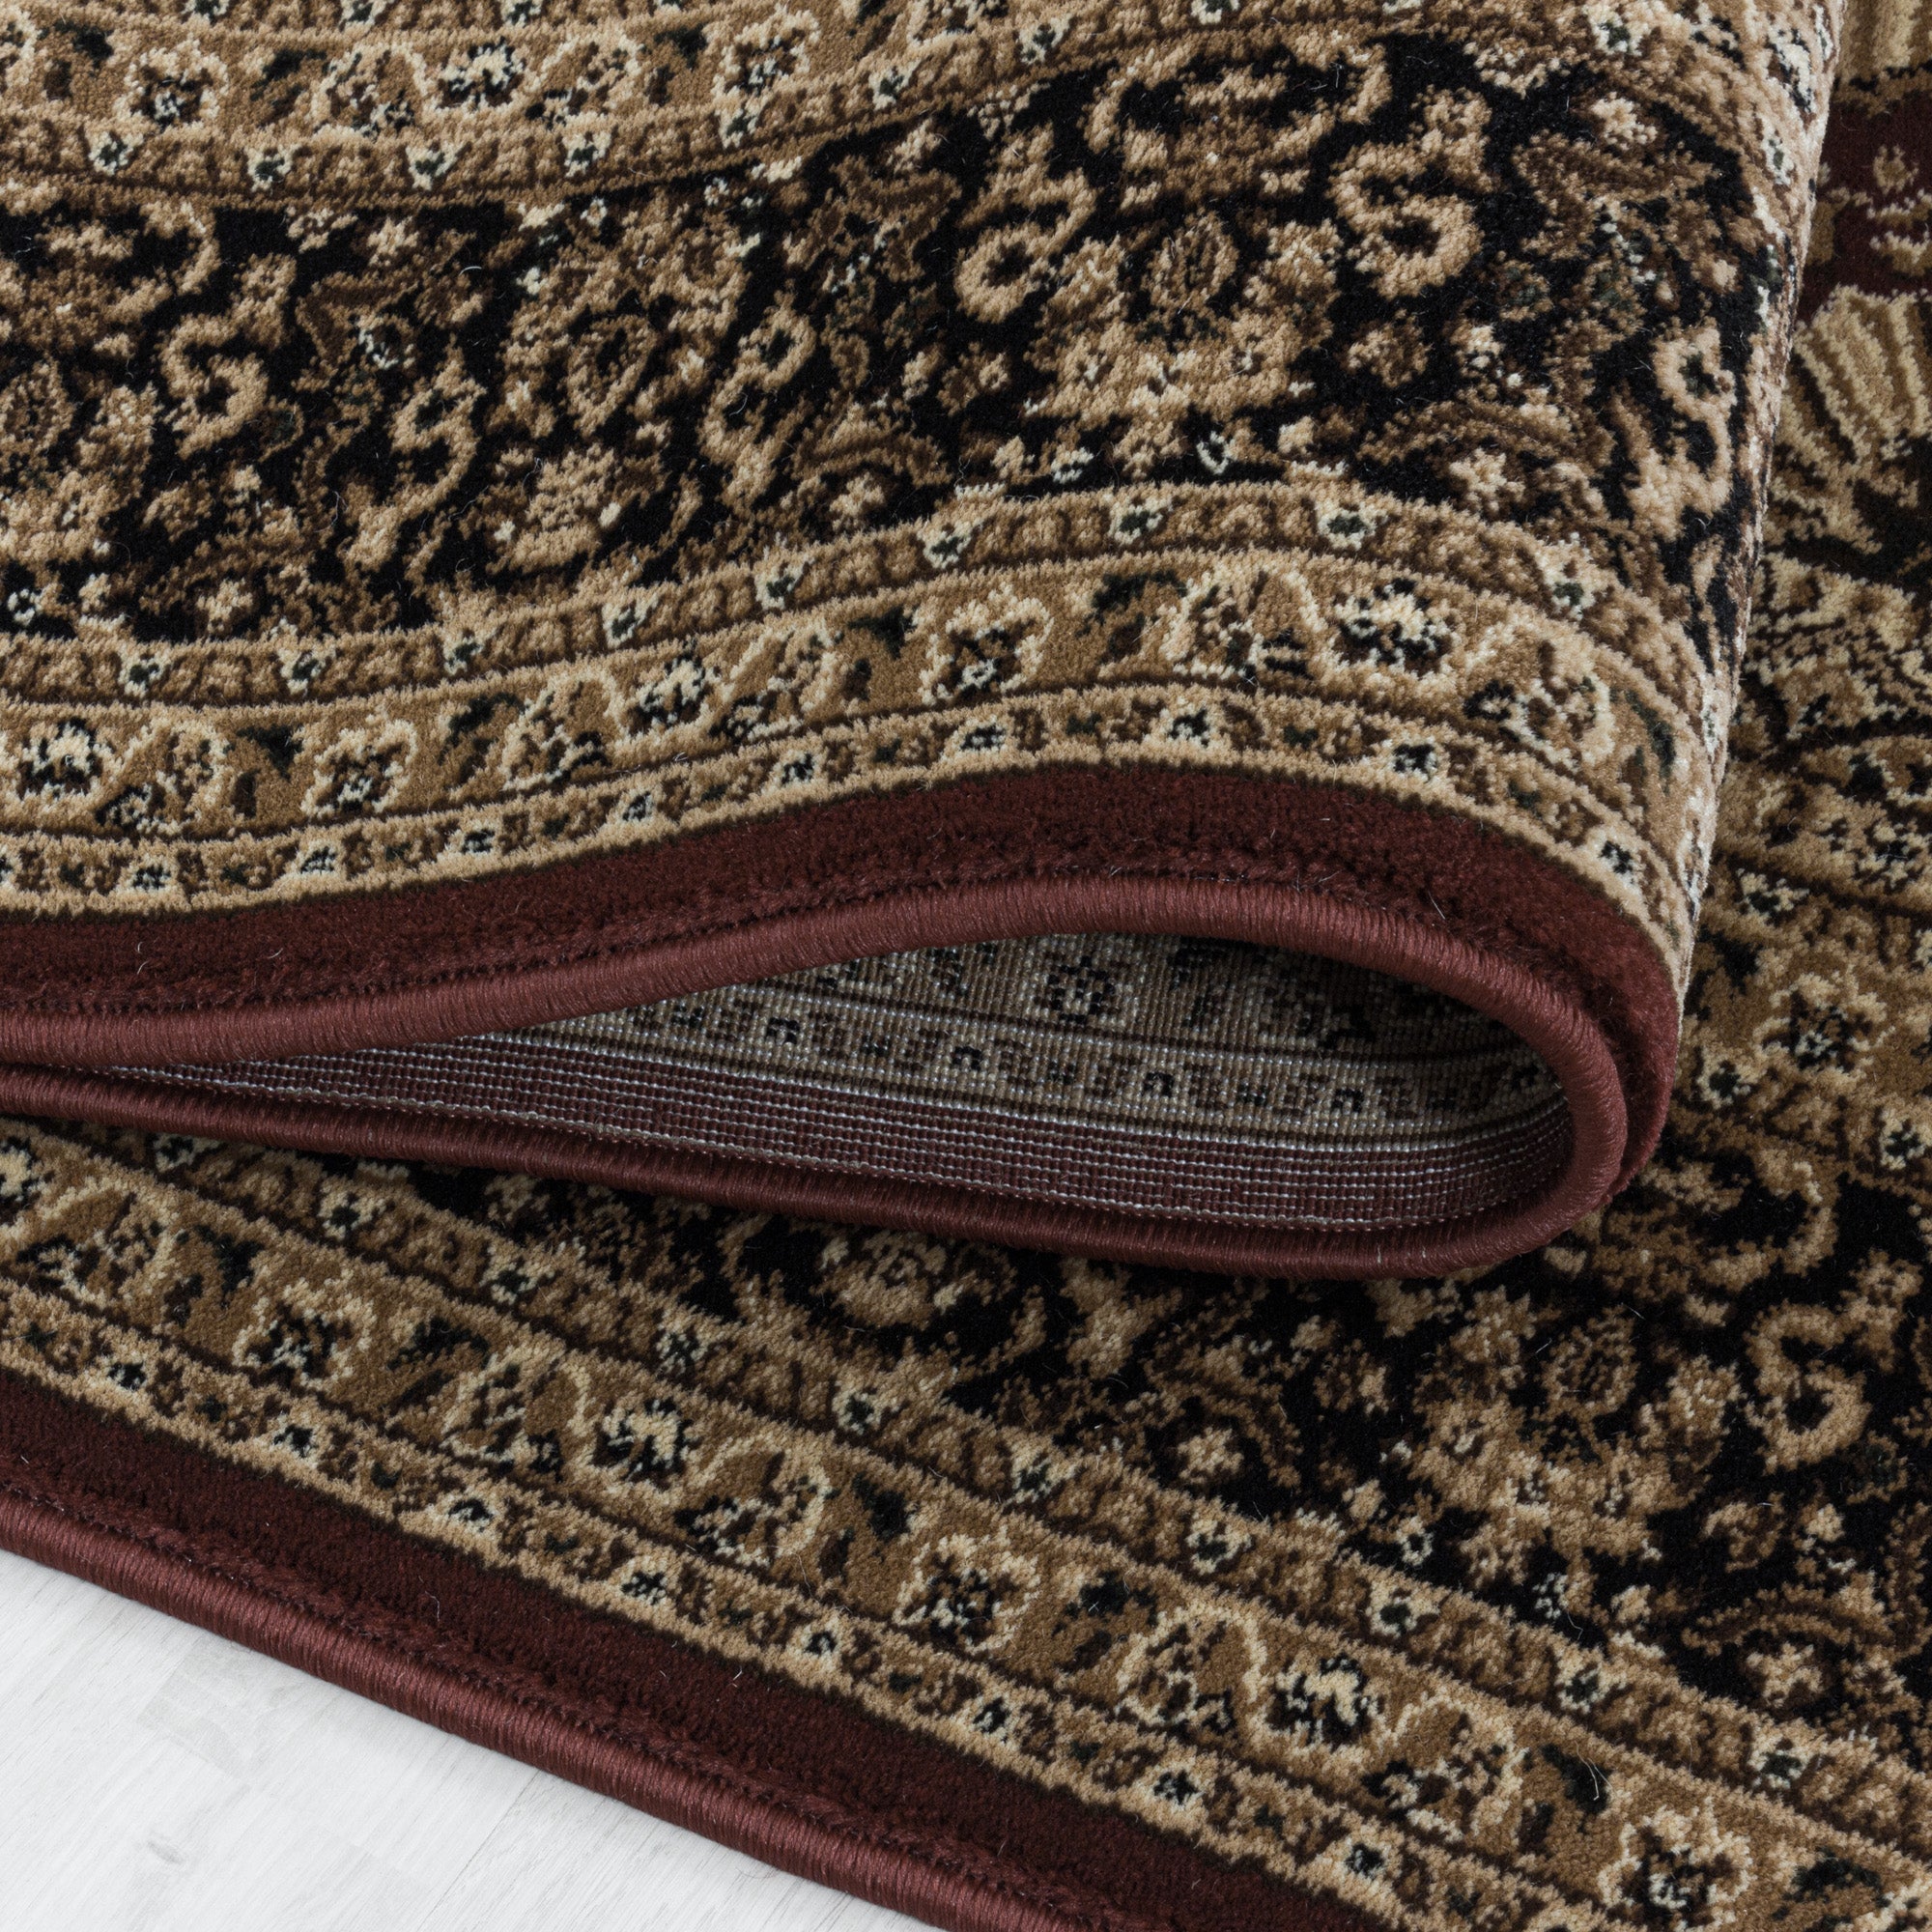 Kurzflor Orient Teppich Klassik Design Antike Bordüre Wohnzimmerteppich Rot